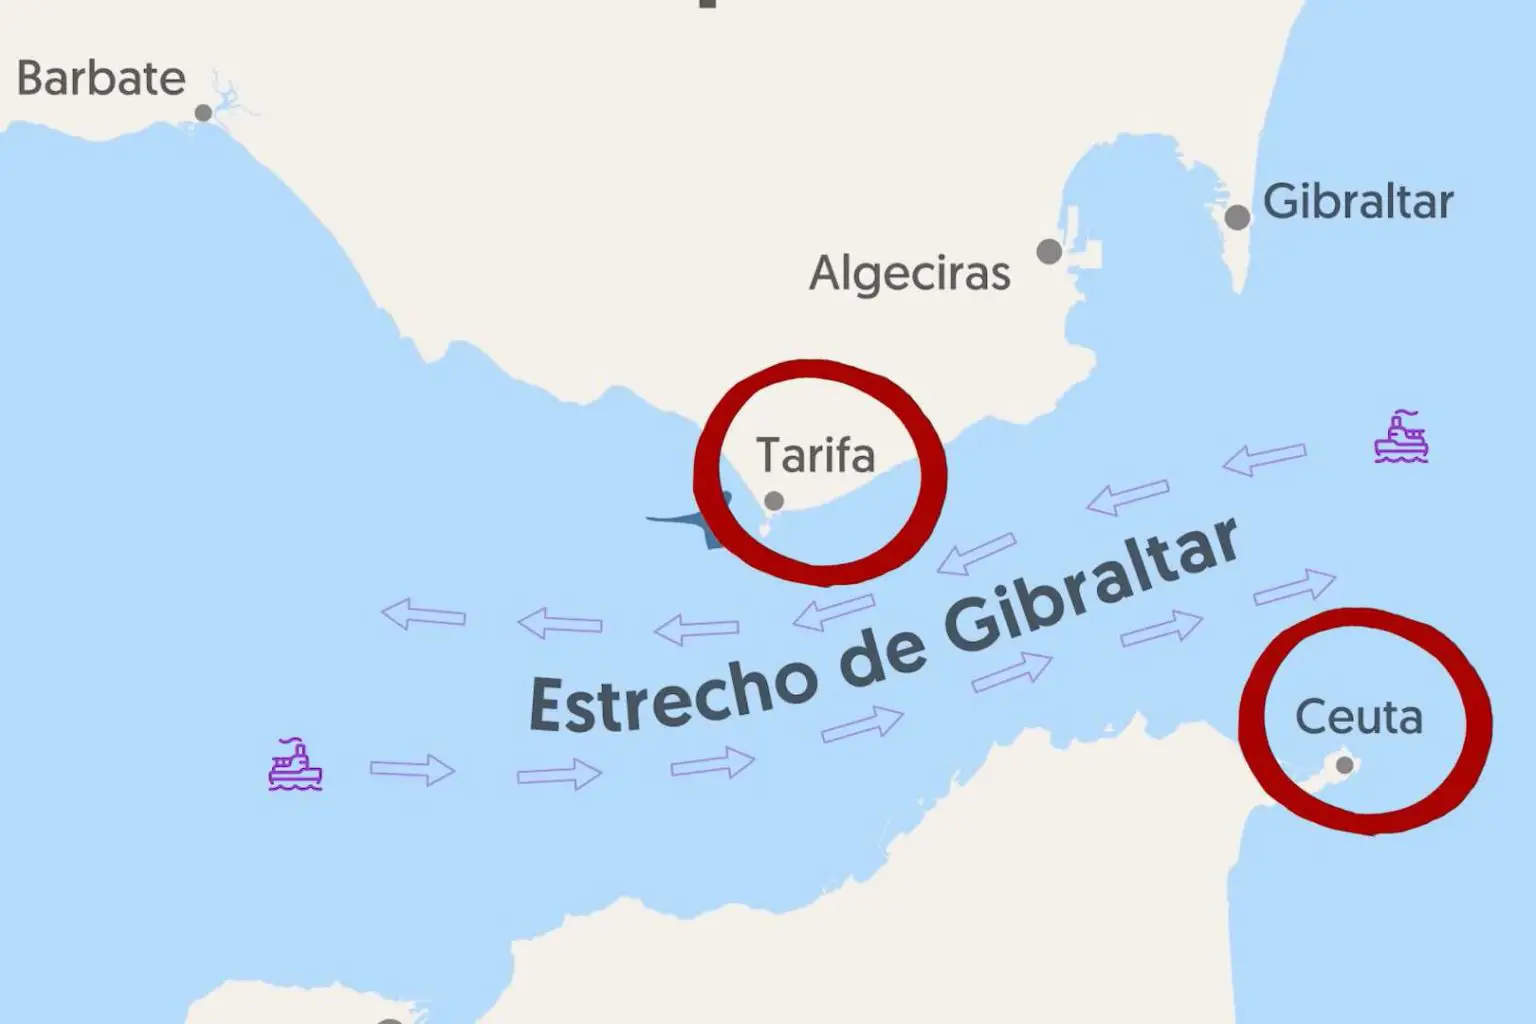 Tarifa and Ceuta